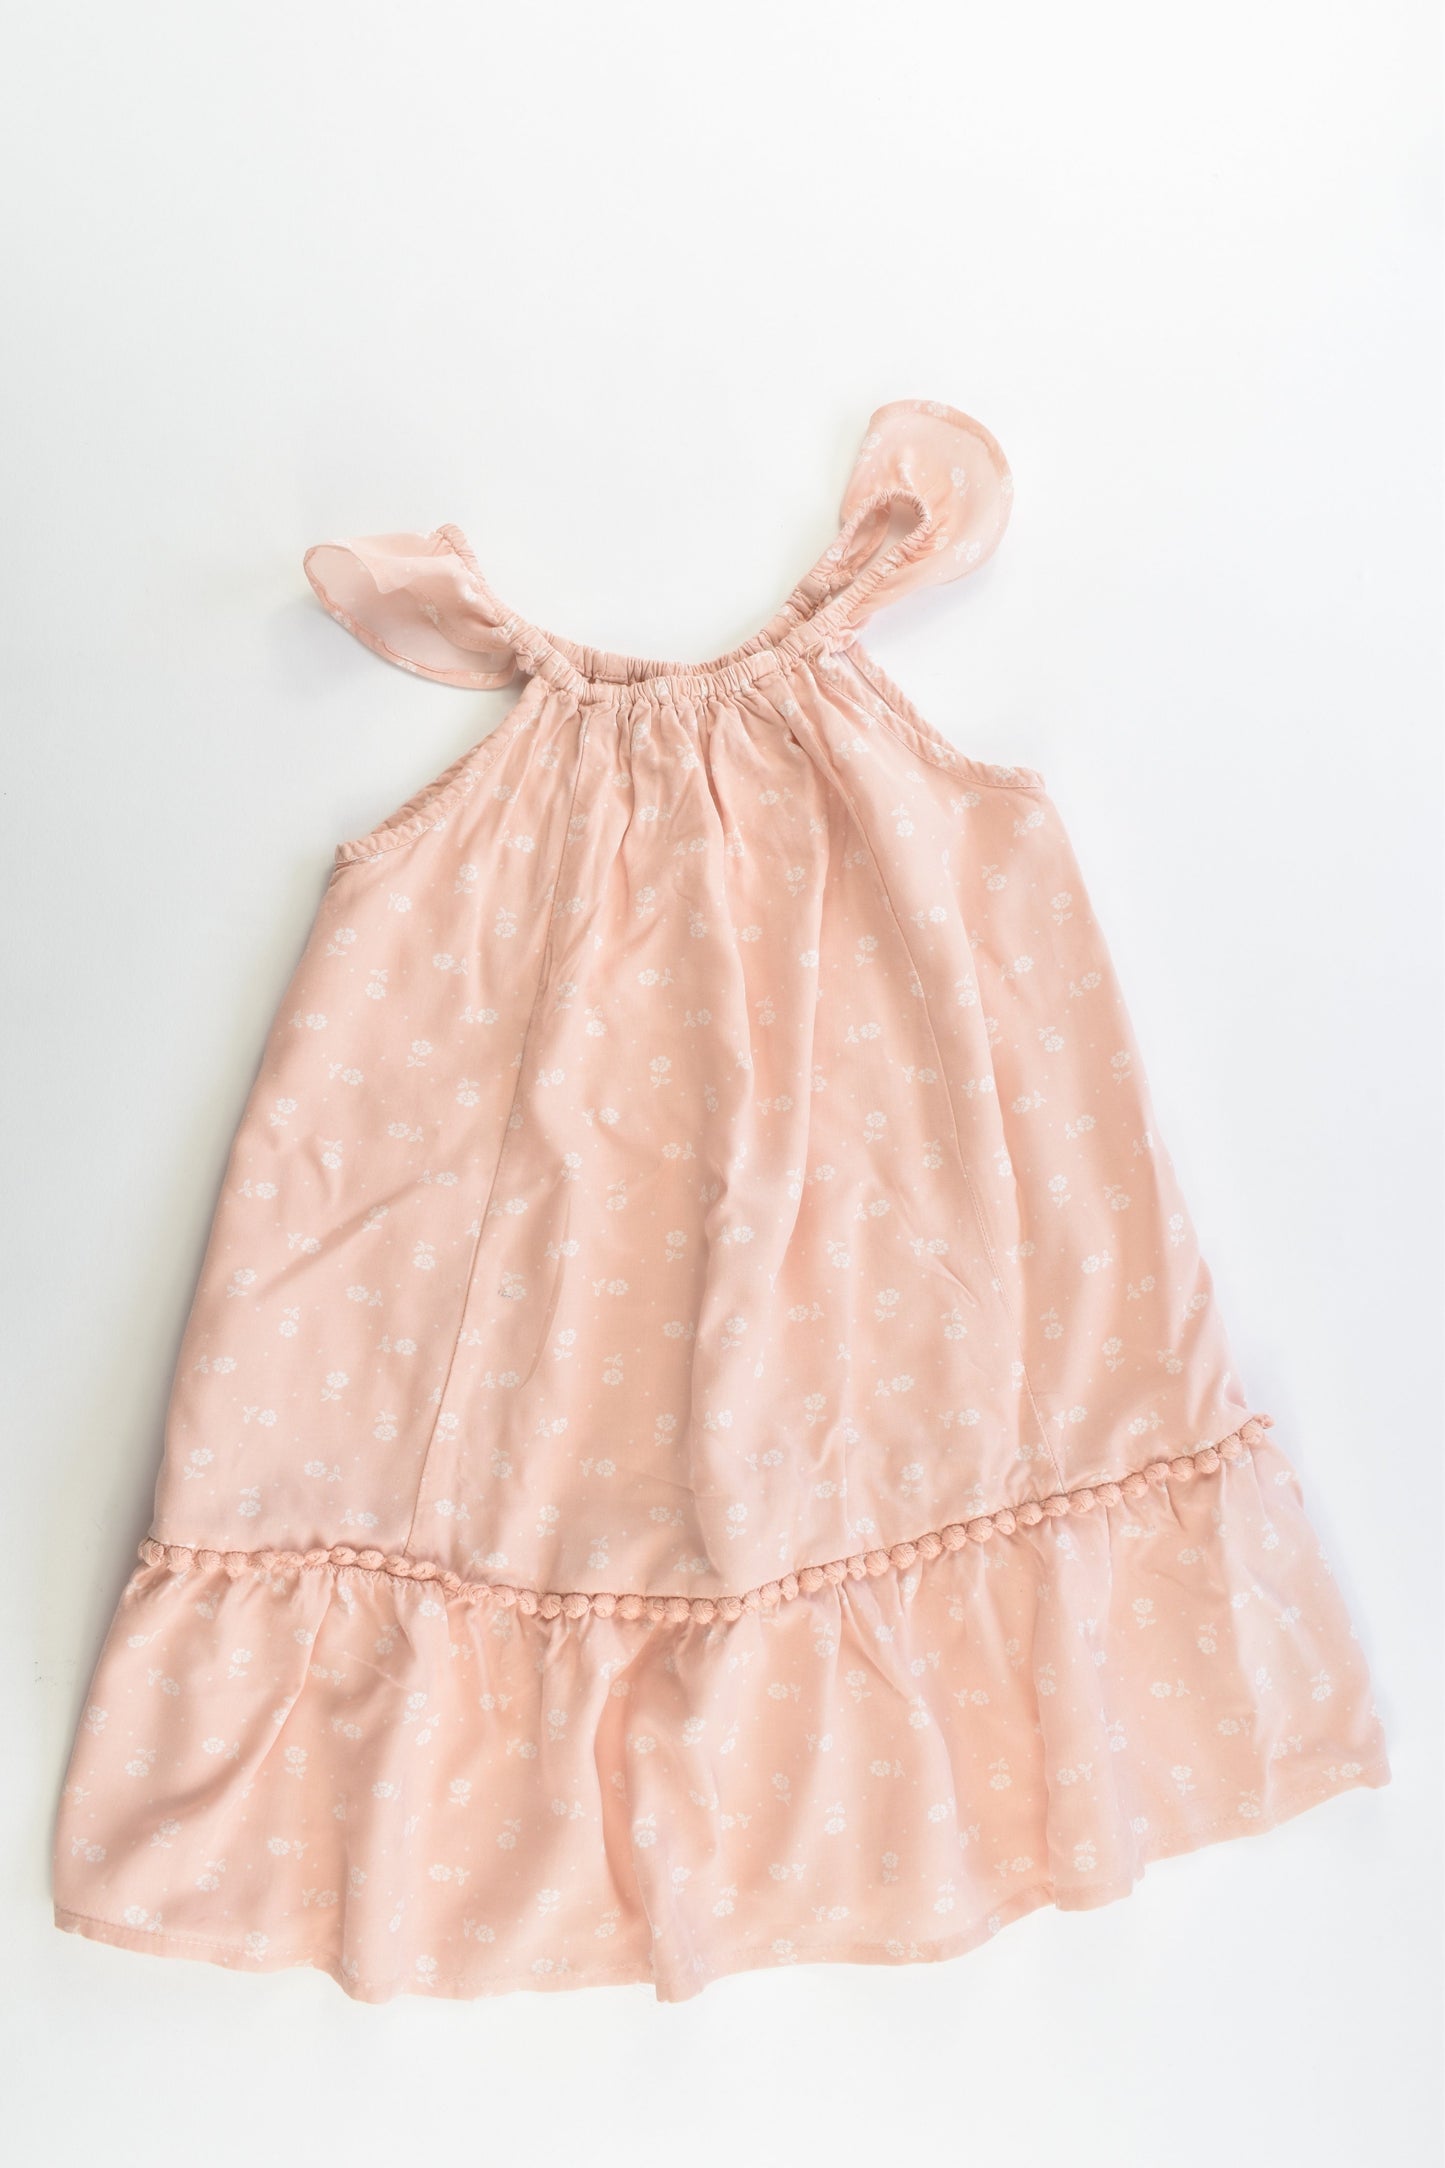 Gap Kids Size 4-5 (110 cm) Lightweight Dress